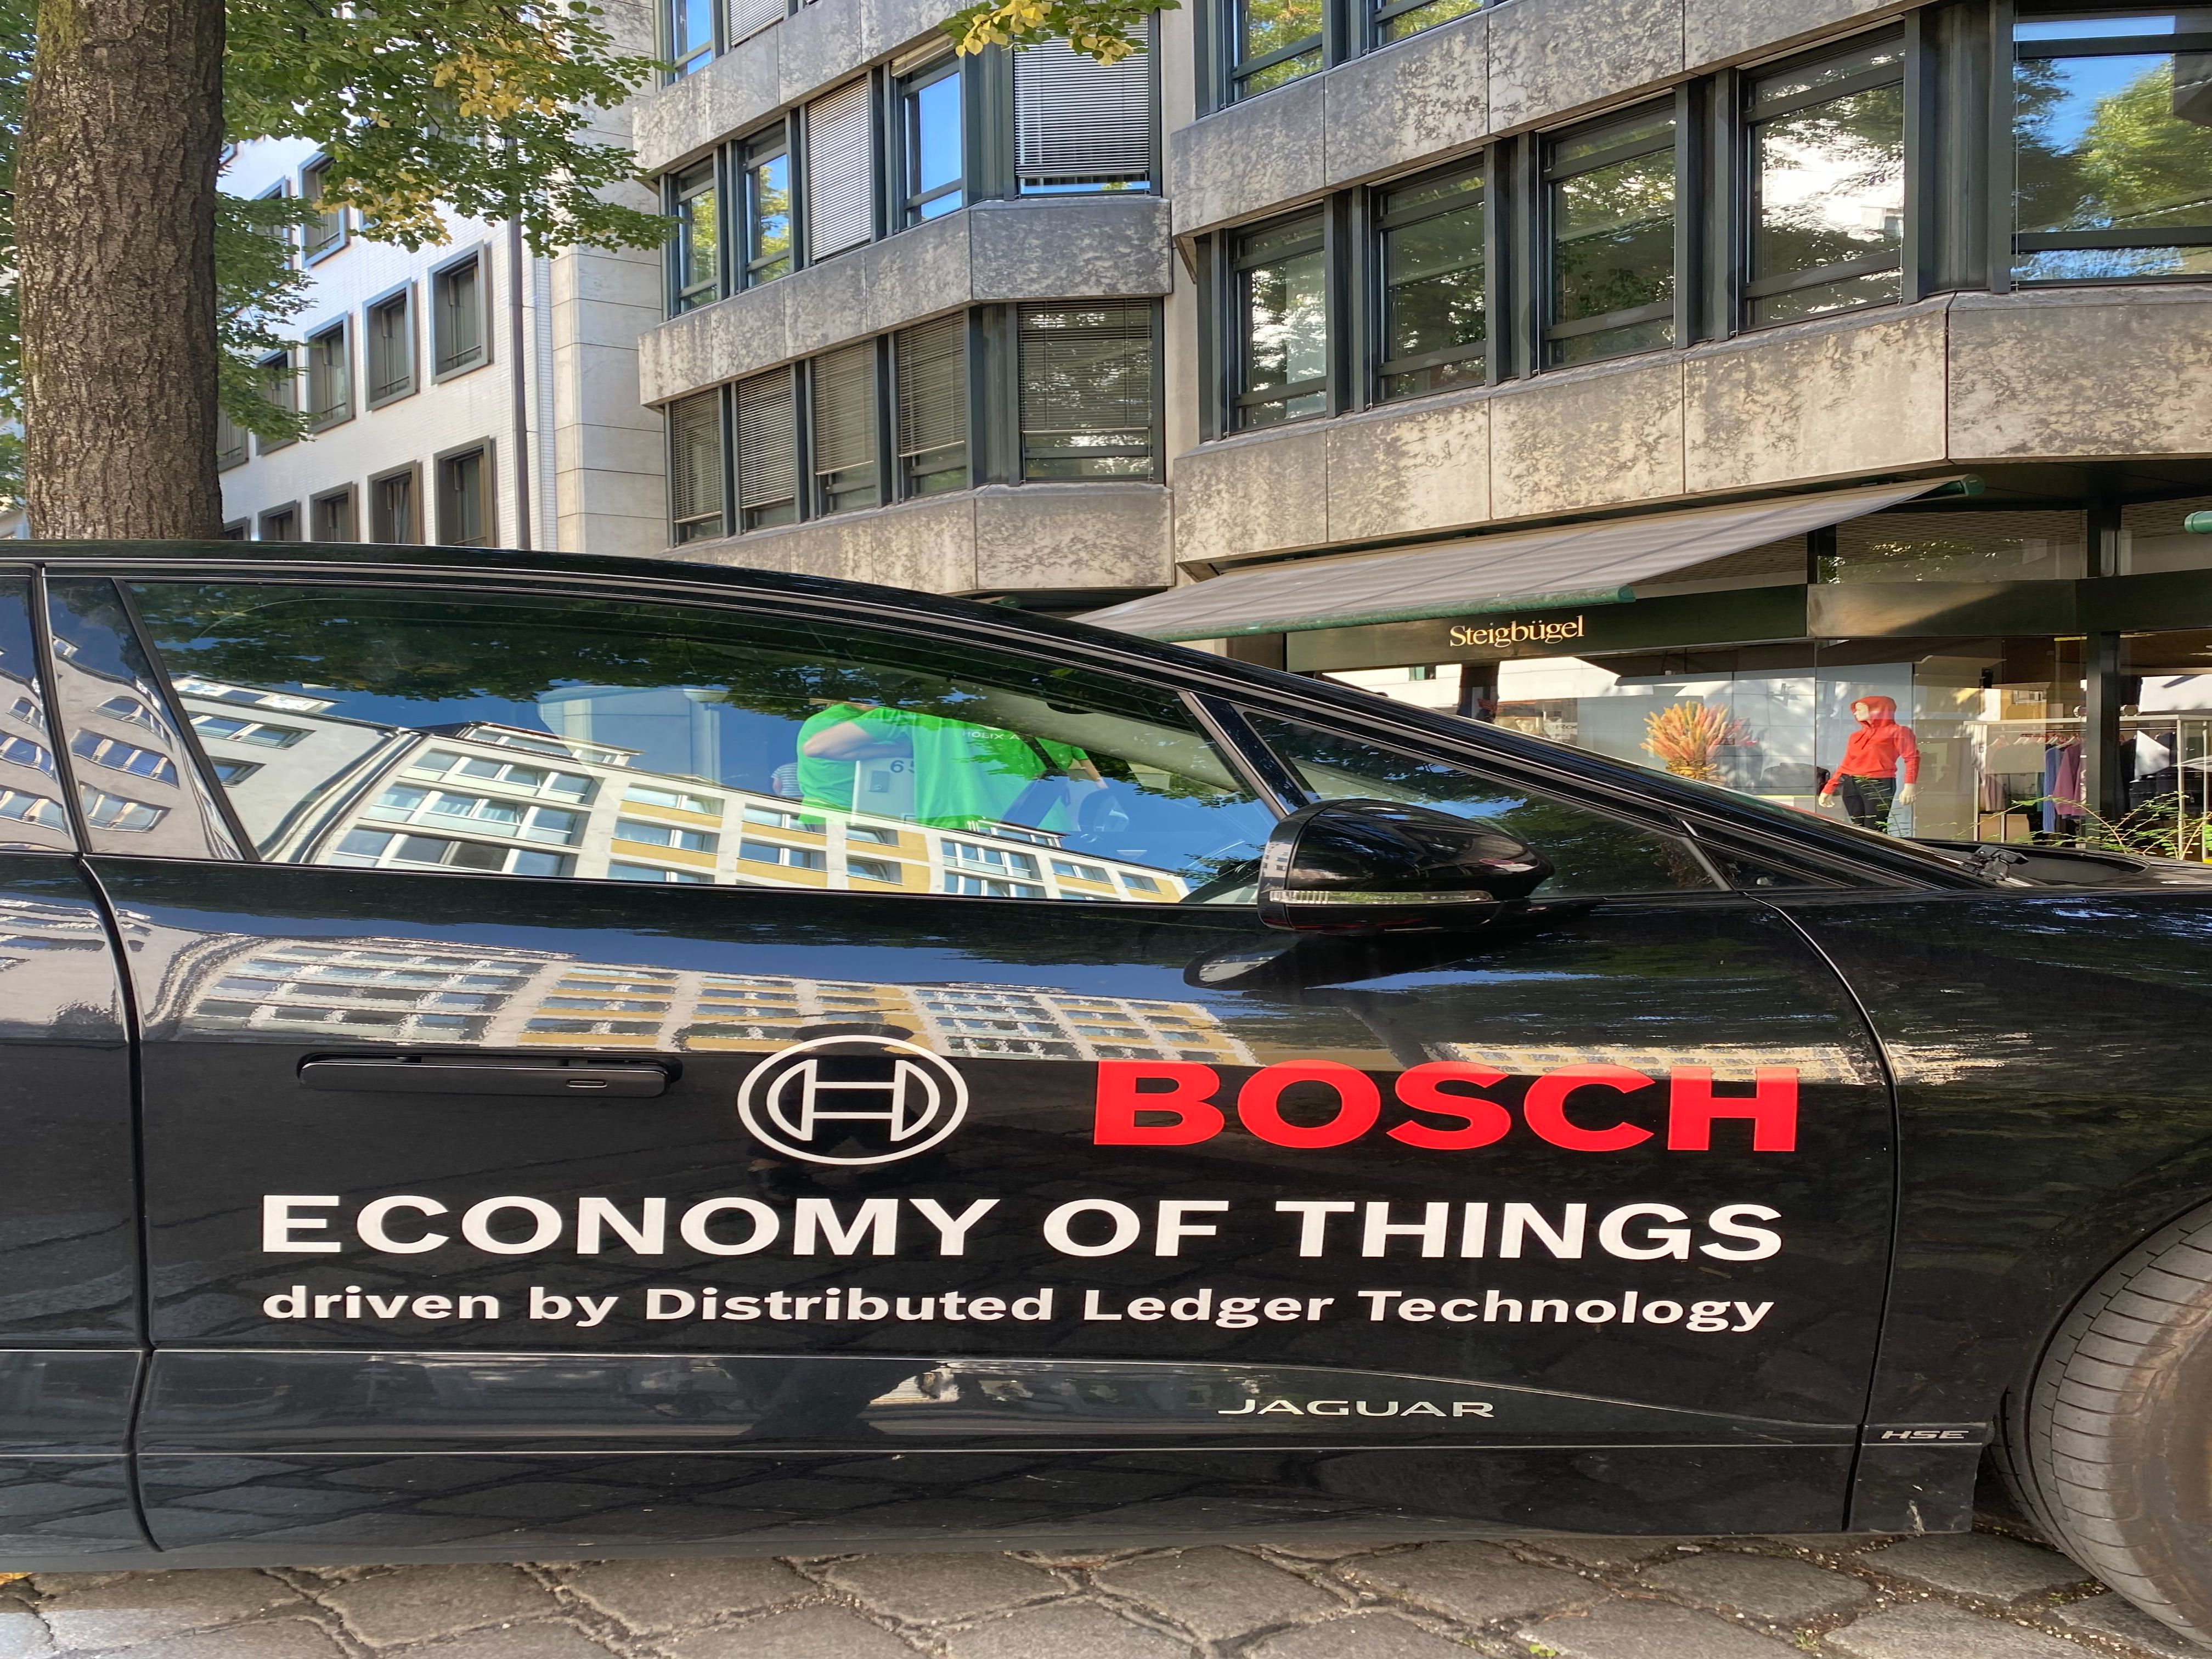 Bosch, ЕС и блокчейн-компании создают децентрализованный Интернет вещей: IAA Mobility